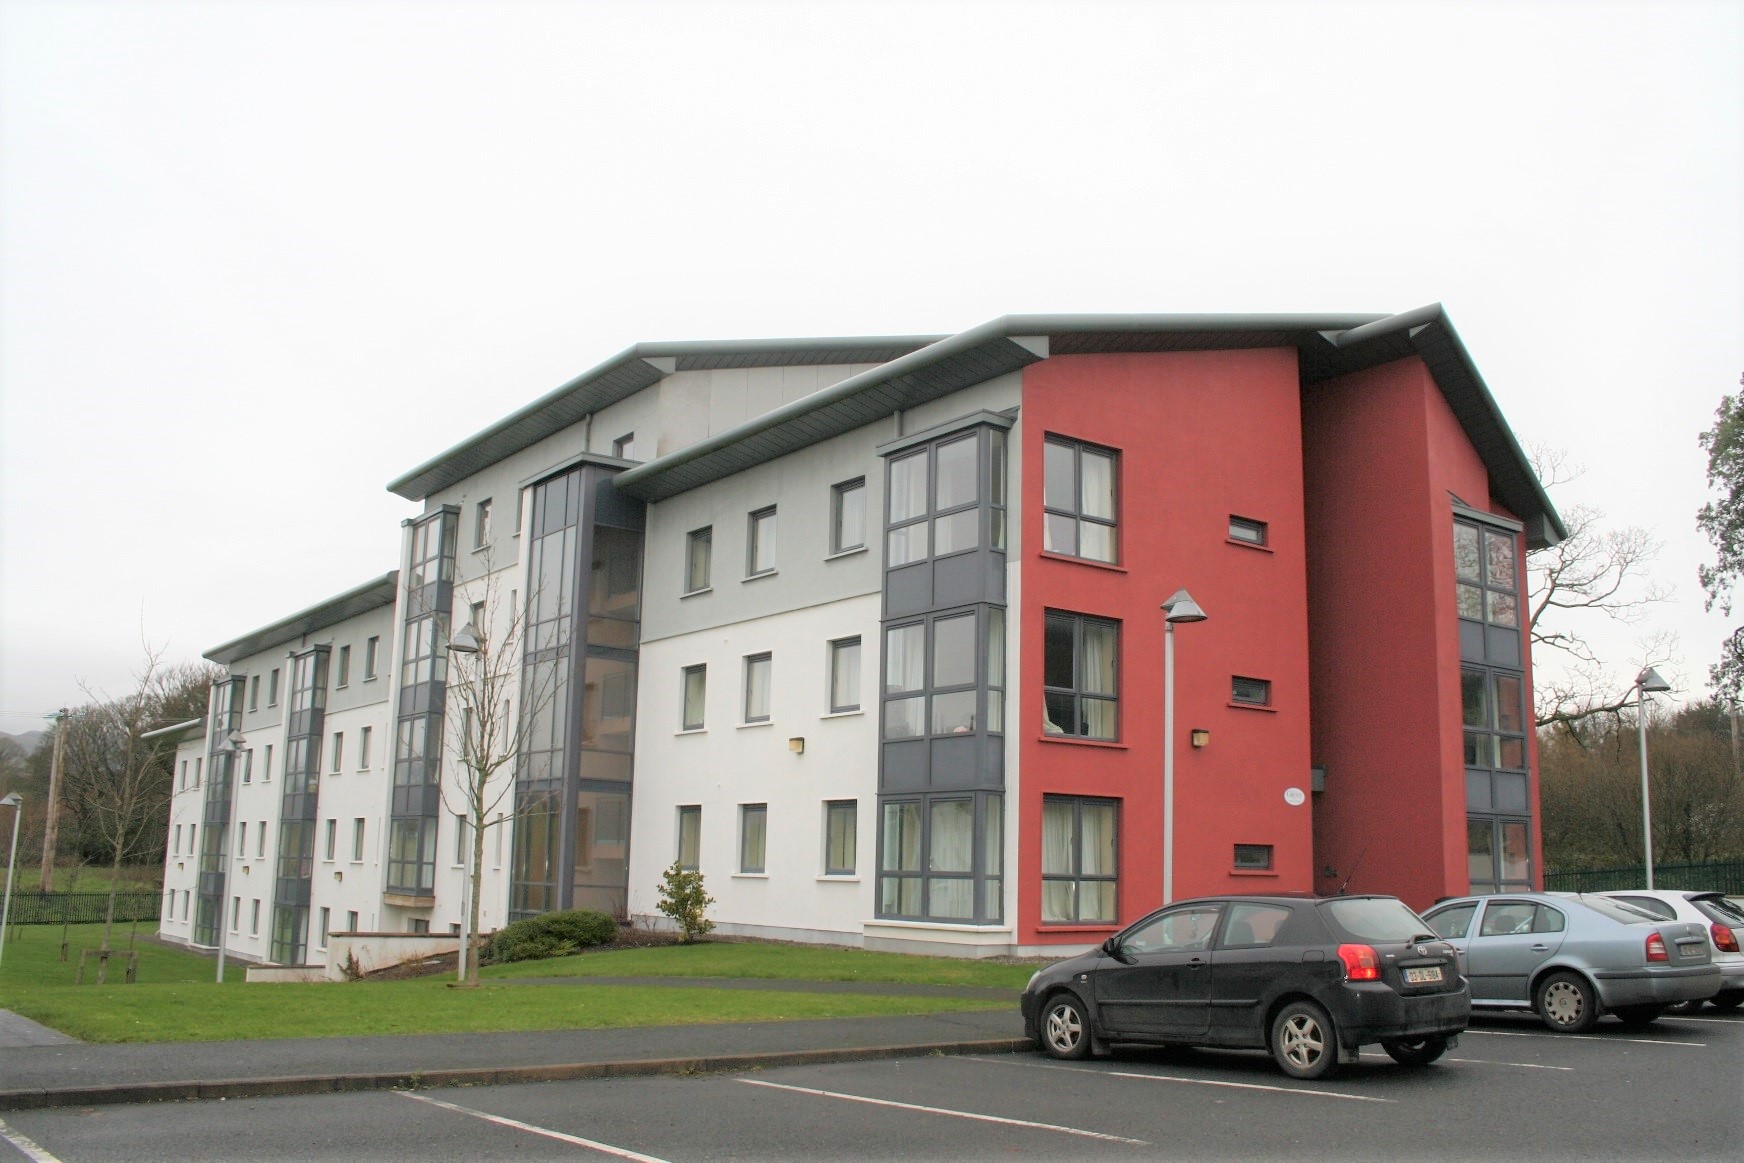 Apartment 55 The Grove, Clarion Road, Sligo, Co. Sligo, F91 A025, Ireland